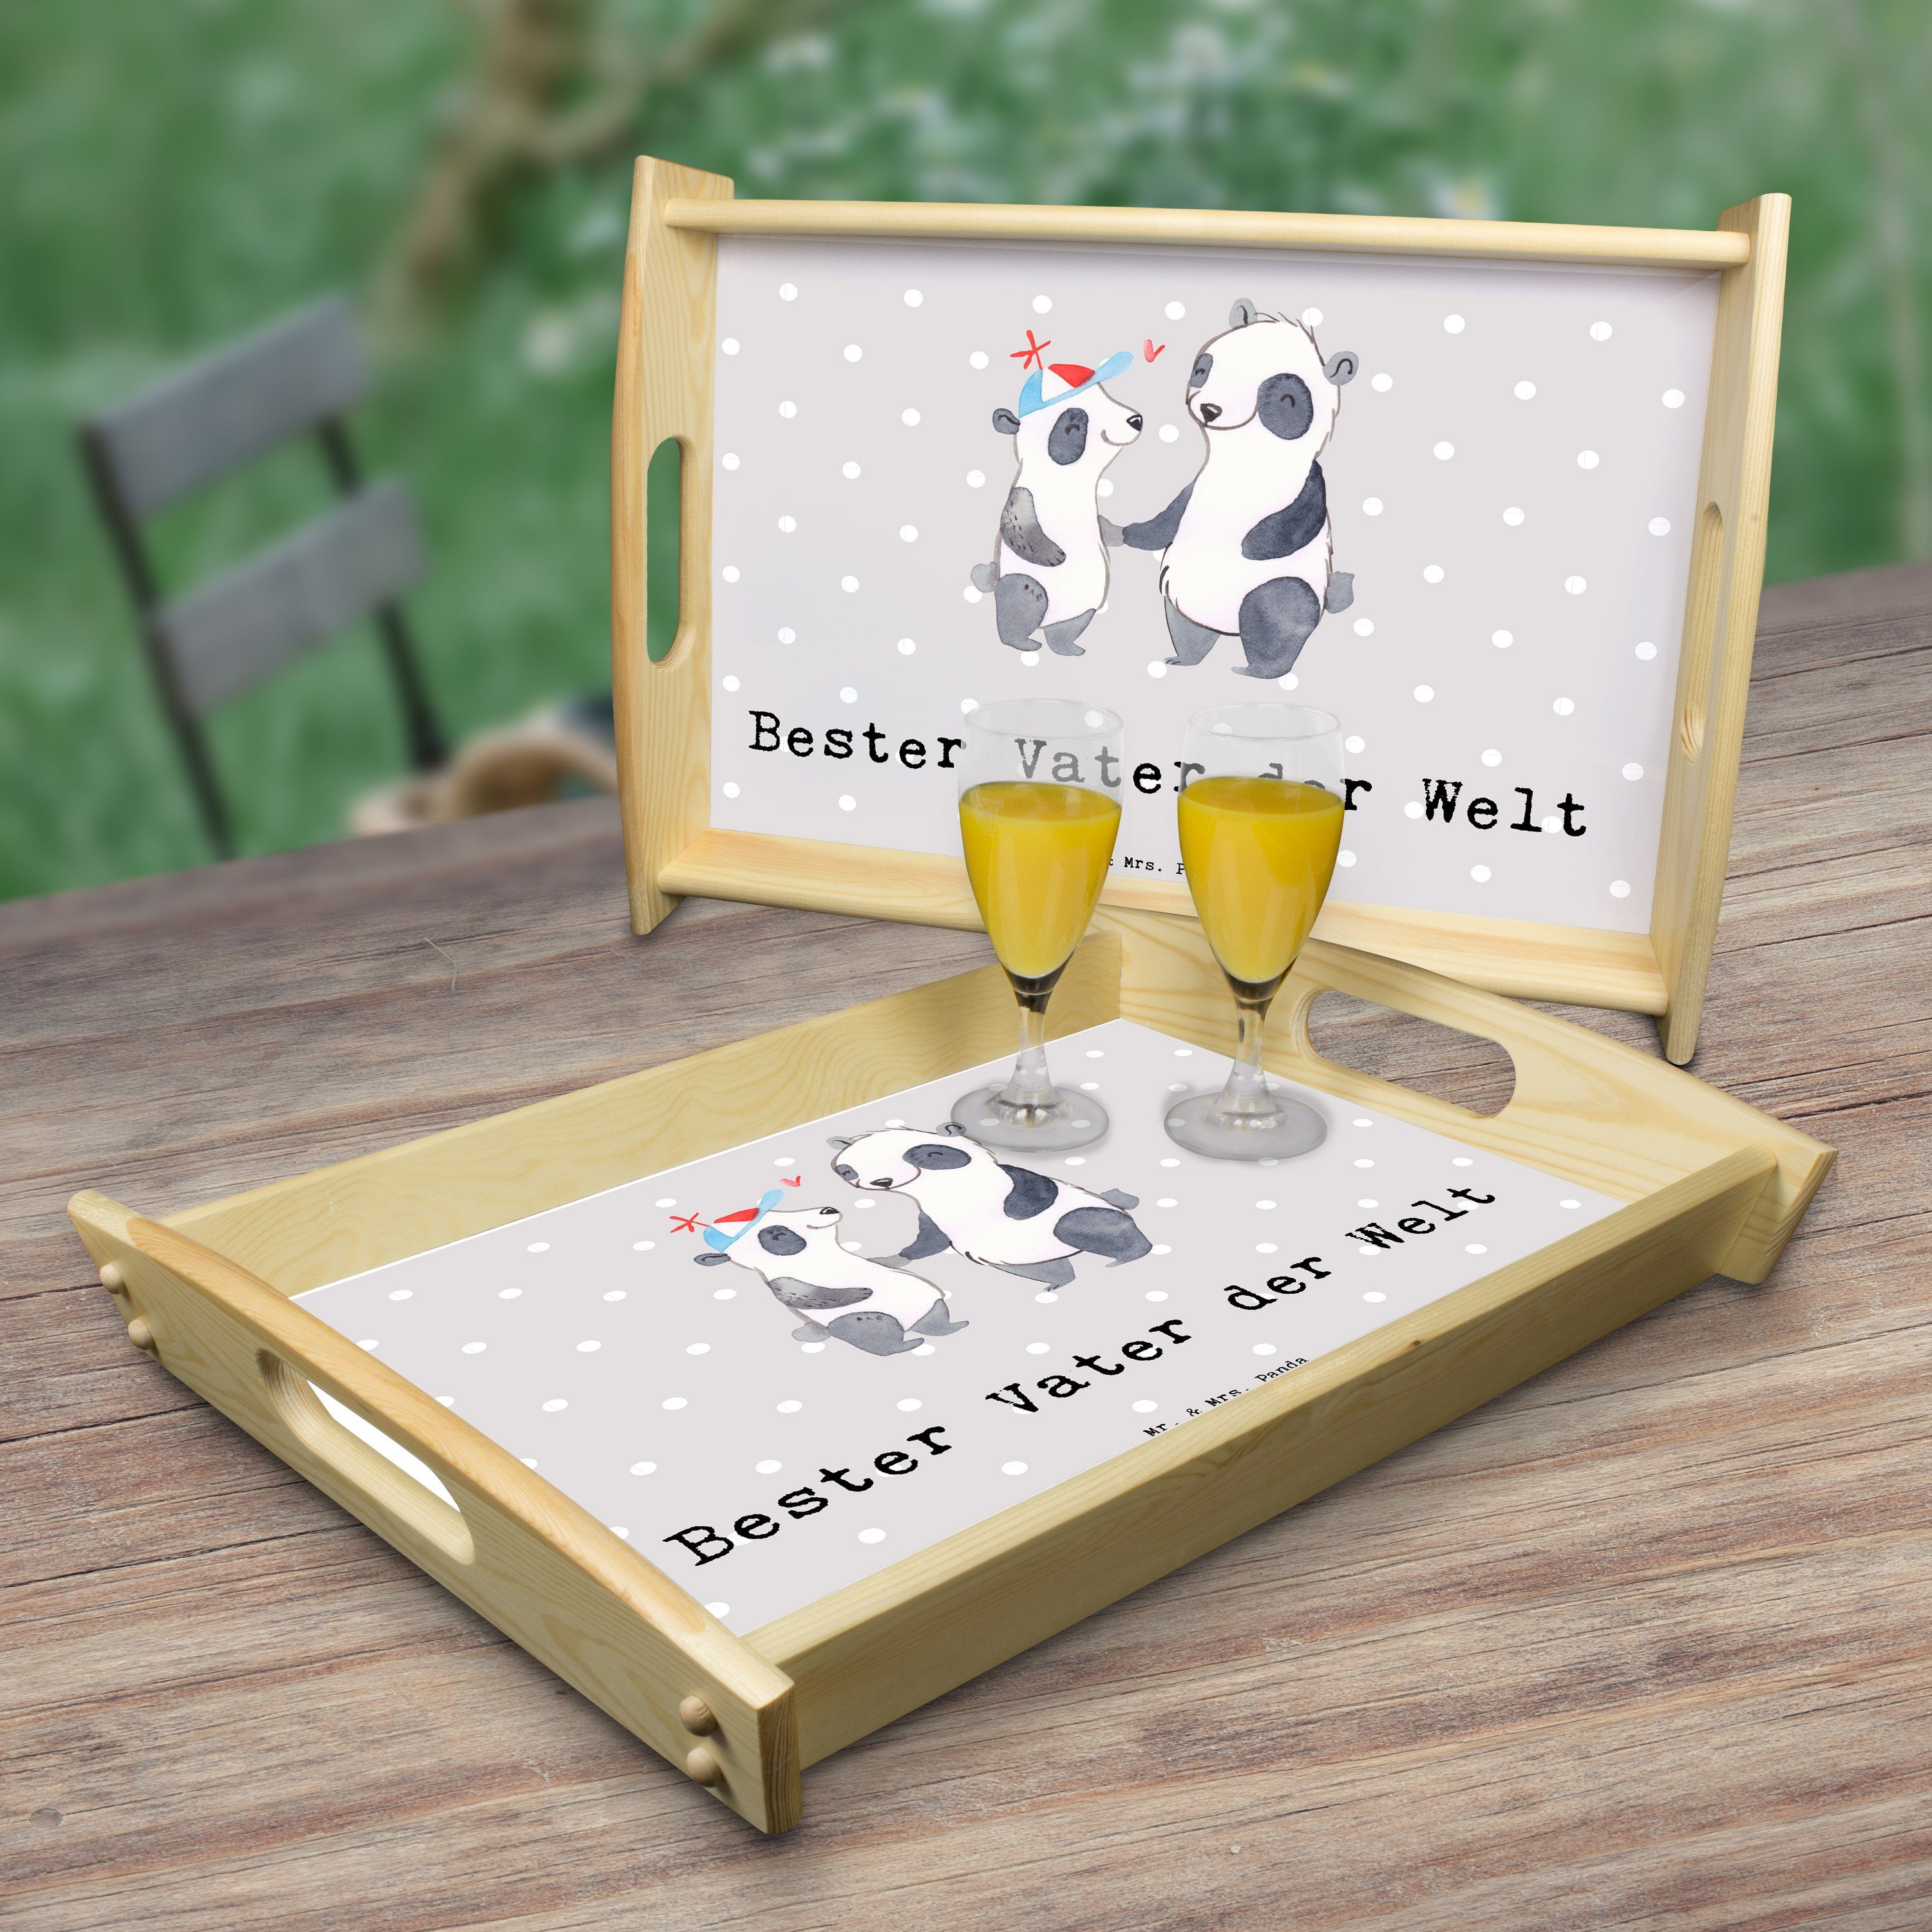 Mr. & Tablett Echtholz Grau Vater lasiert, Pastell Panda Panda der (1-tlg) Mrs. - Welt - Geschenk, Dankeschön, Bester Kü